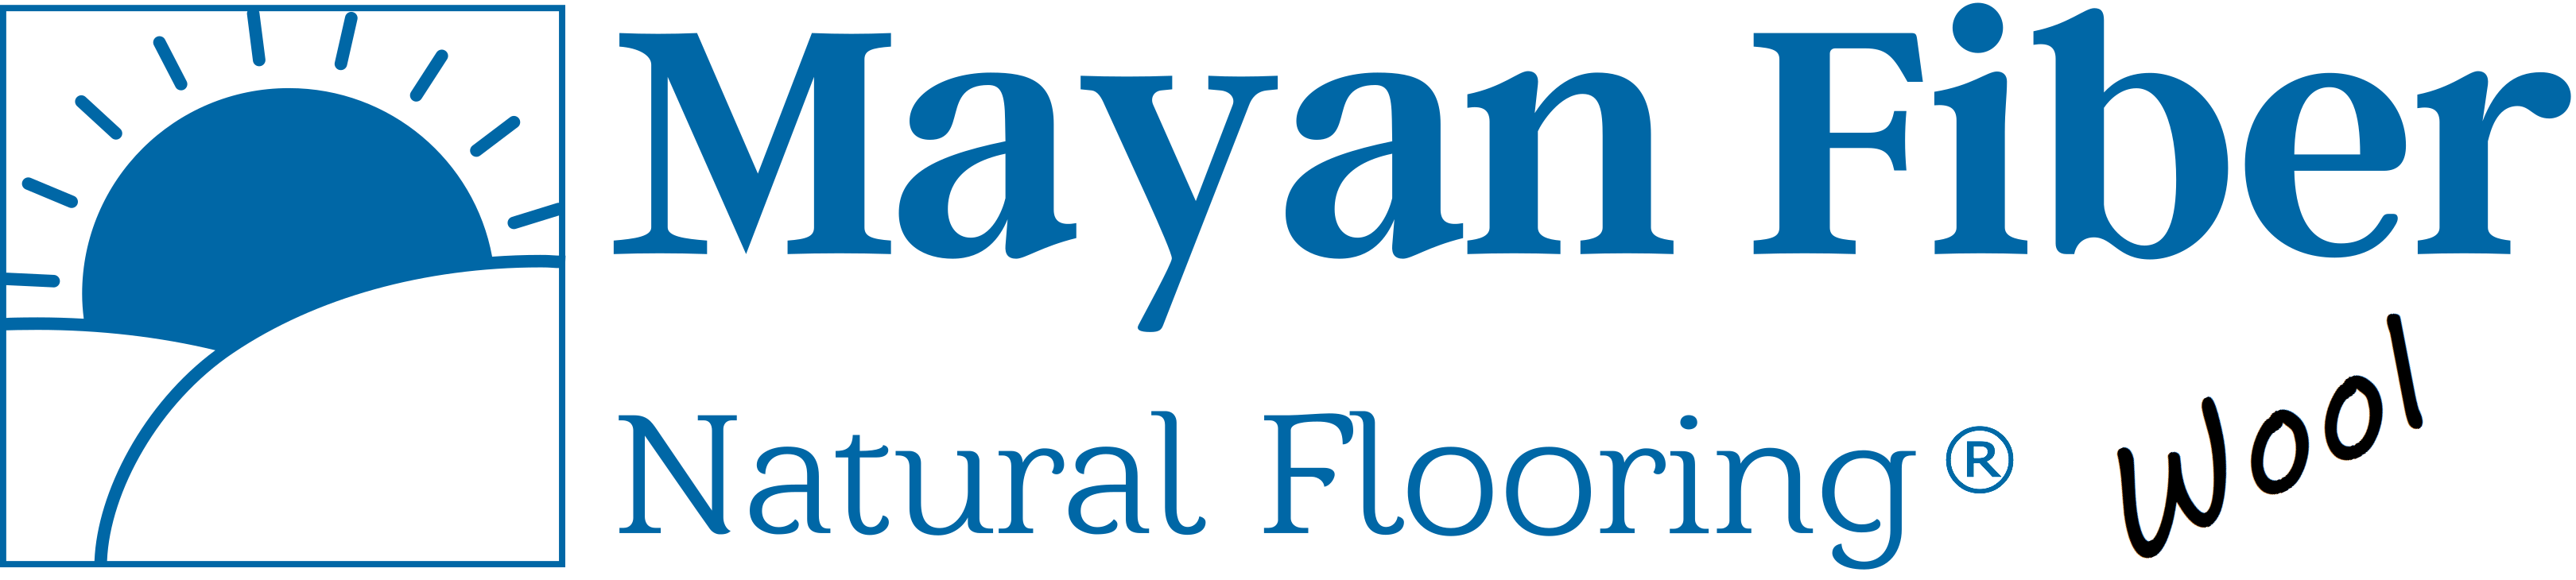 LogoMayanWool